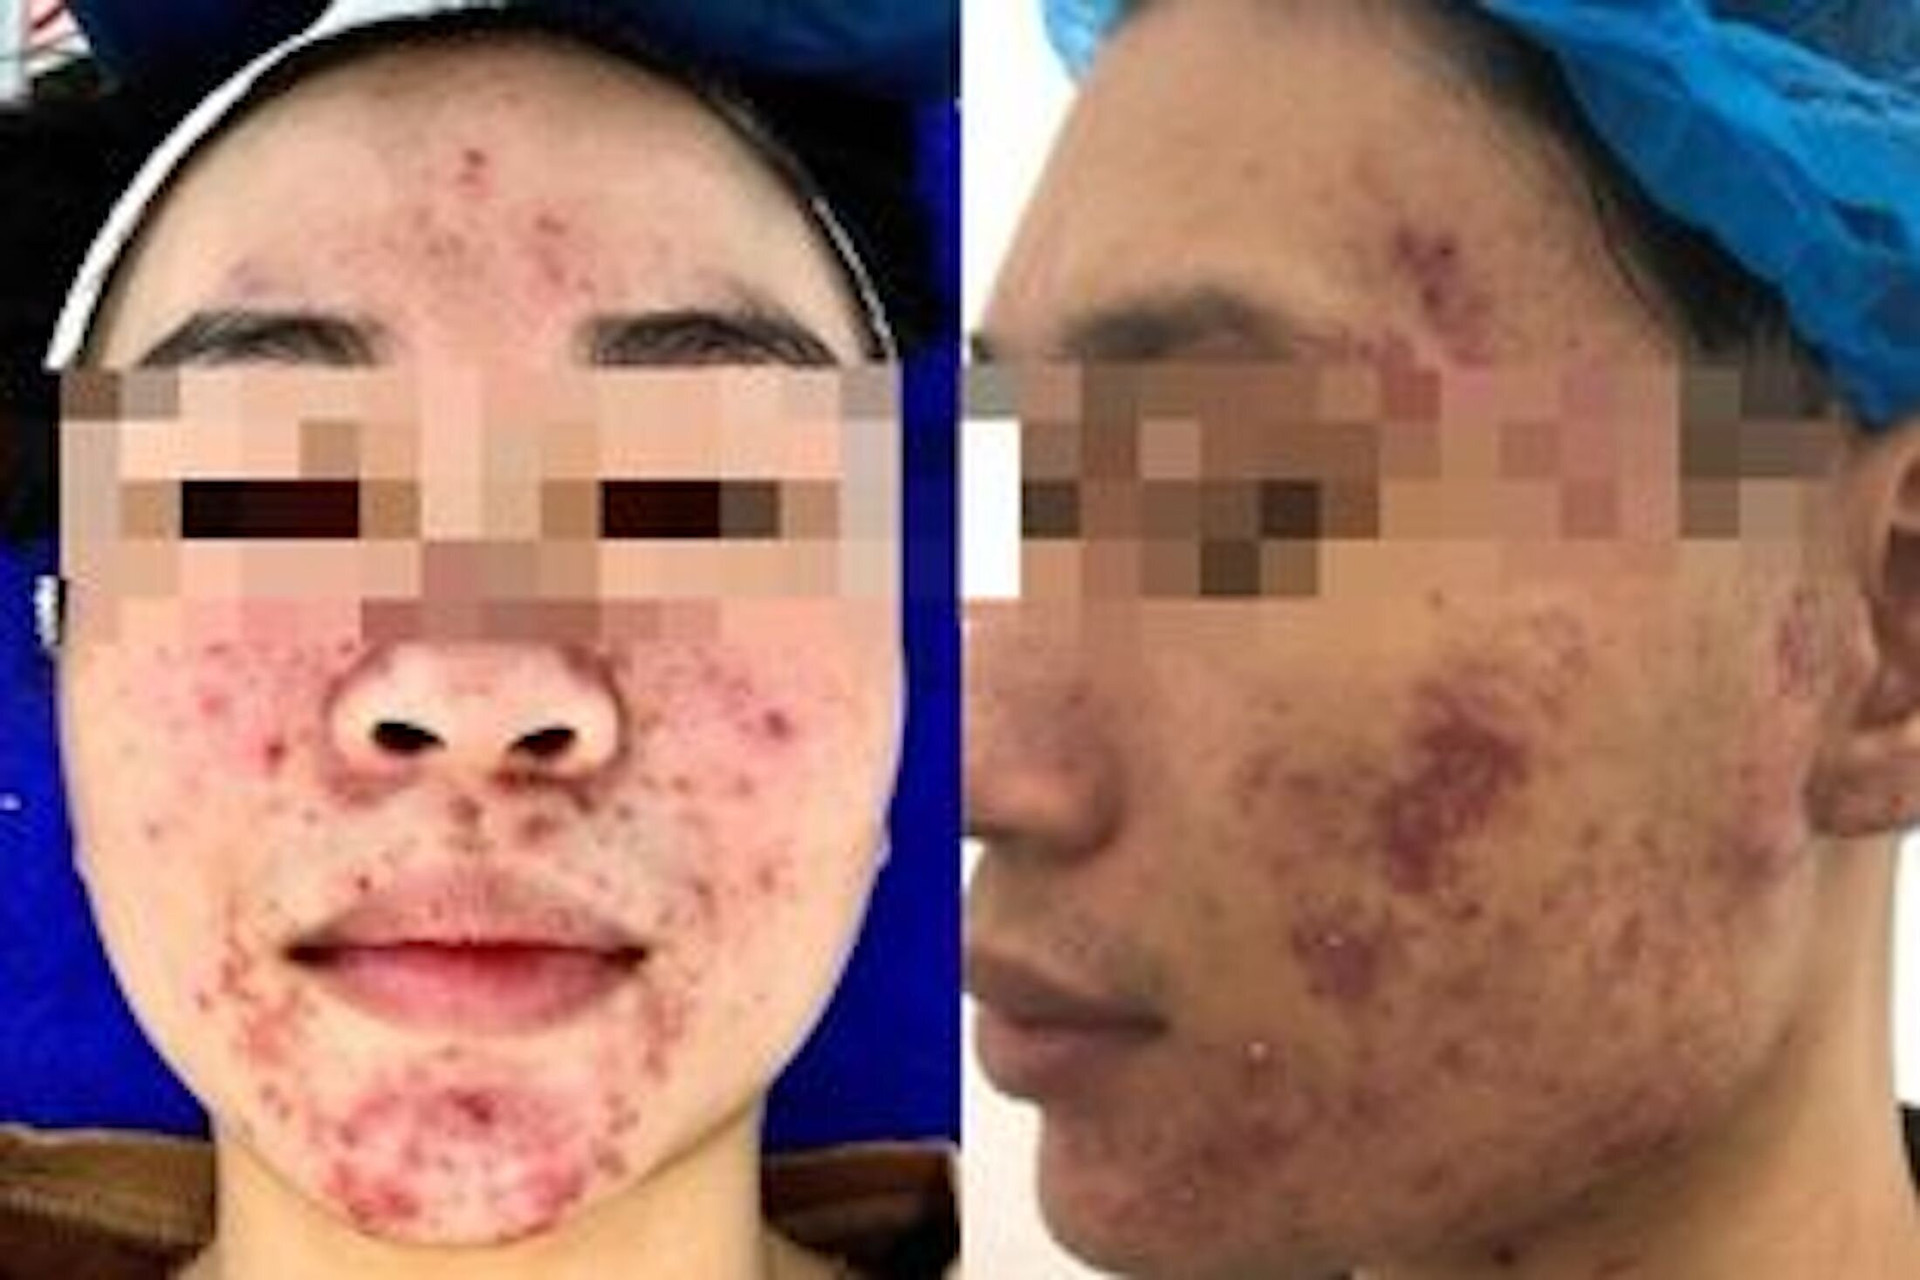 Da của Minh (bên phải) và Mai xuất hiện các ô viêm nhiễm, đầy dịch mủ sau khi sử dụng mỹ phẩm không rõ nguồn gốc. (Ảnh BSCC)